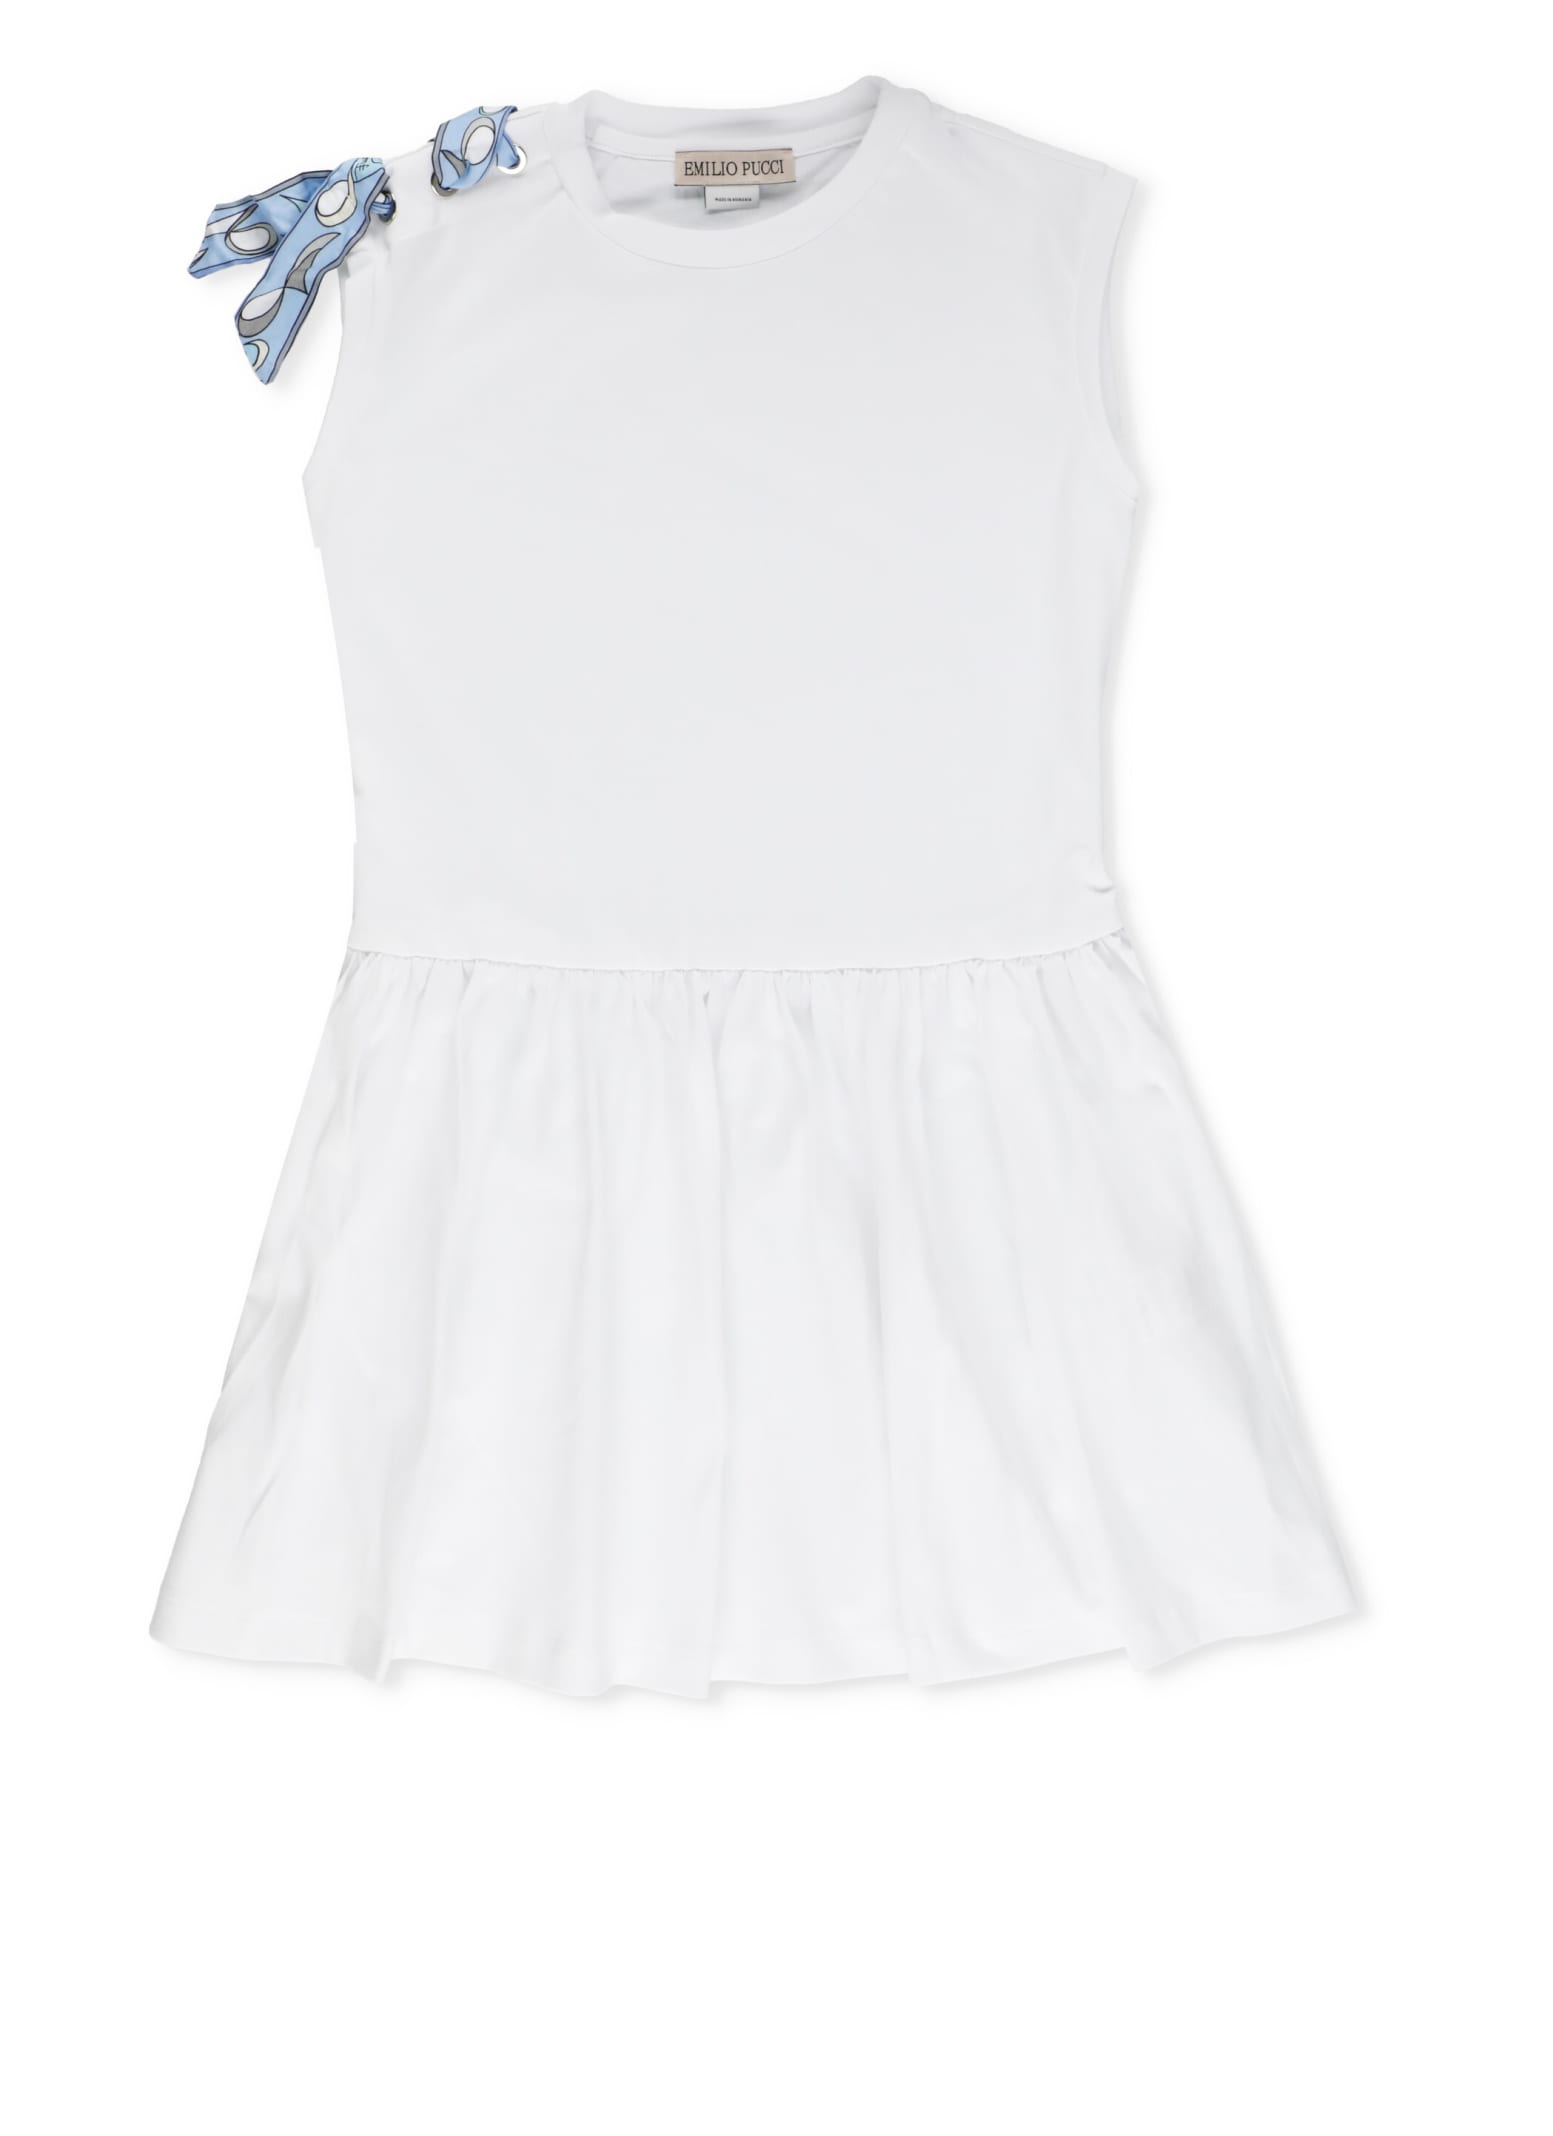 Emilio Pucci Kids' Cotton Dress In White